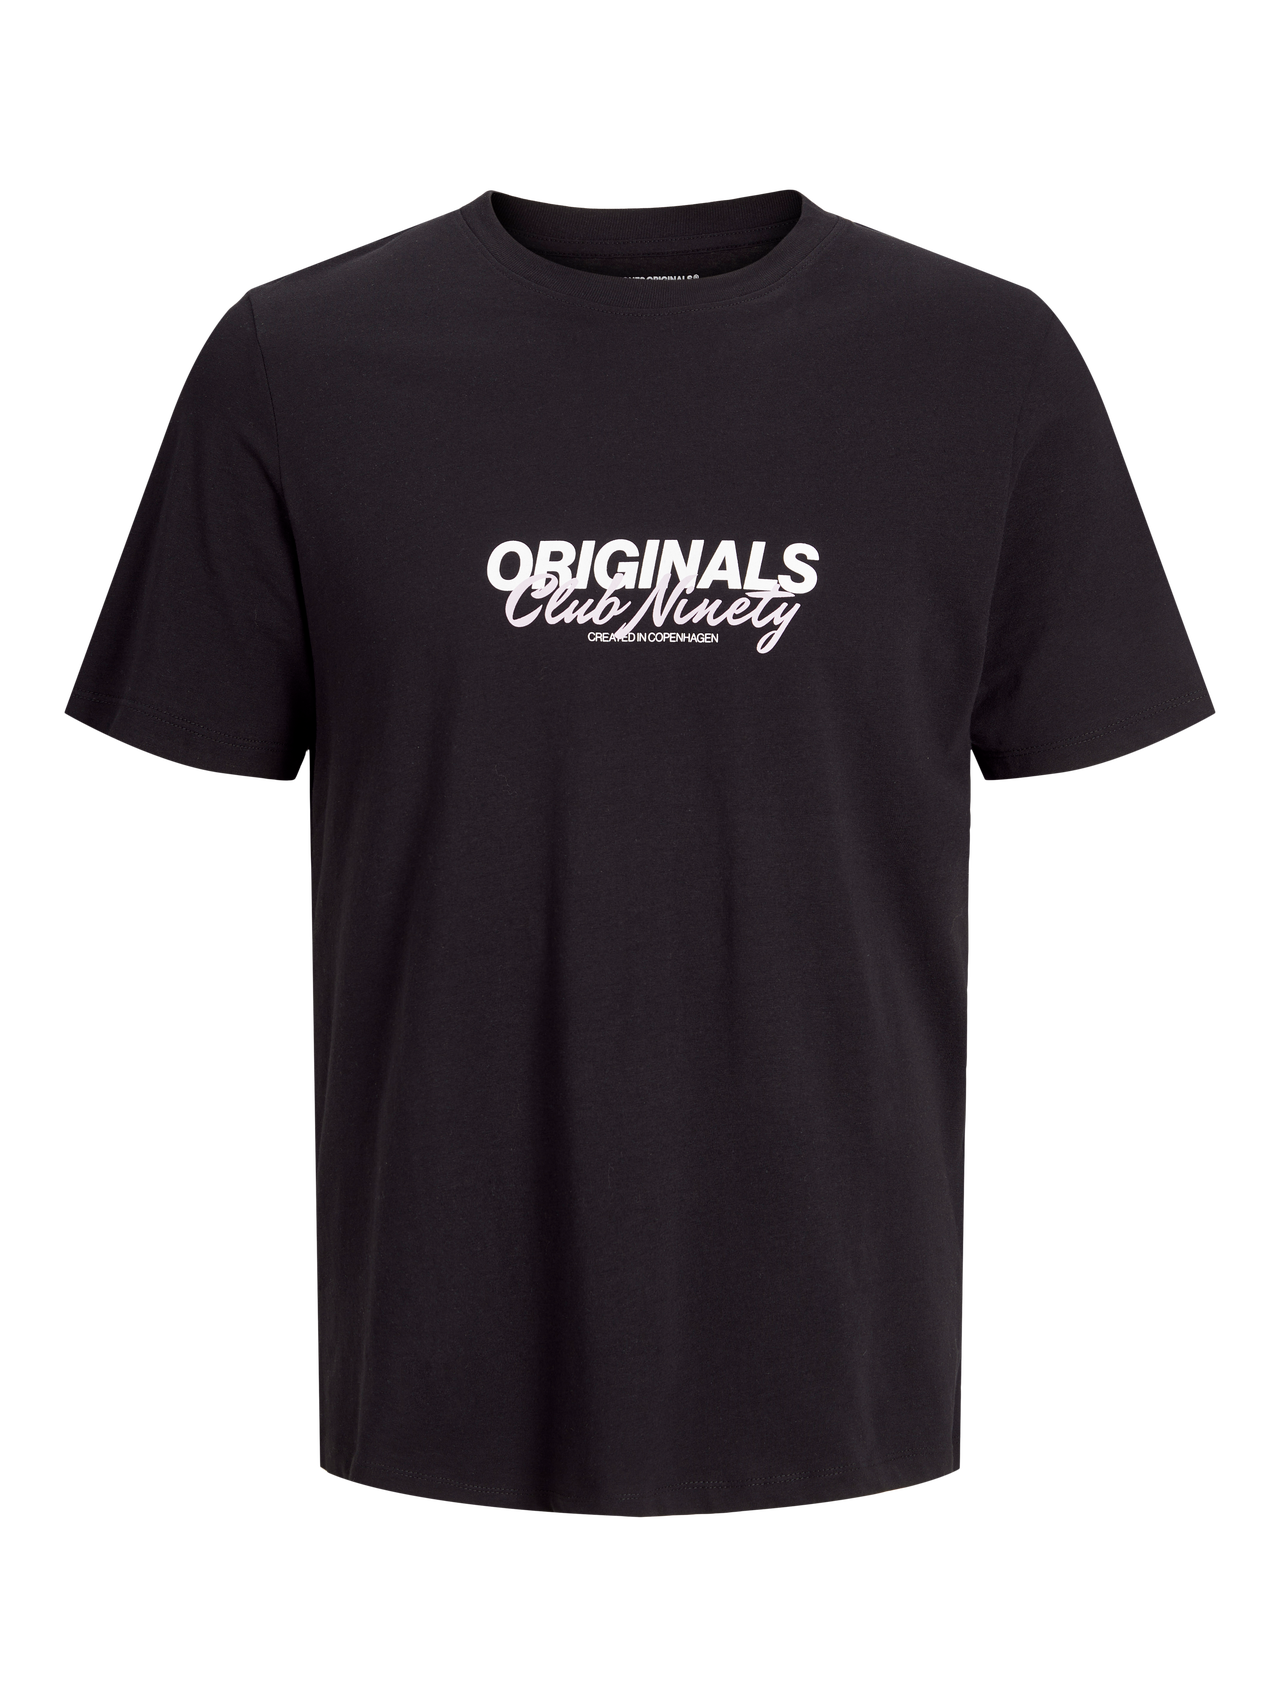 Jack & Jones Gedruckt Rundhals T-shirt -Black - 12255079